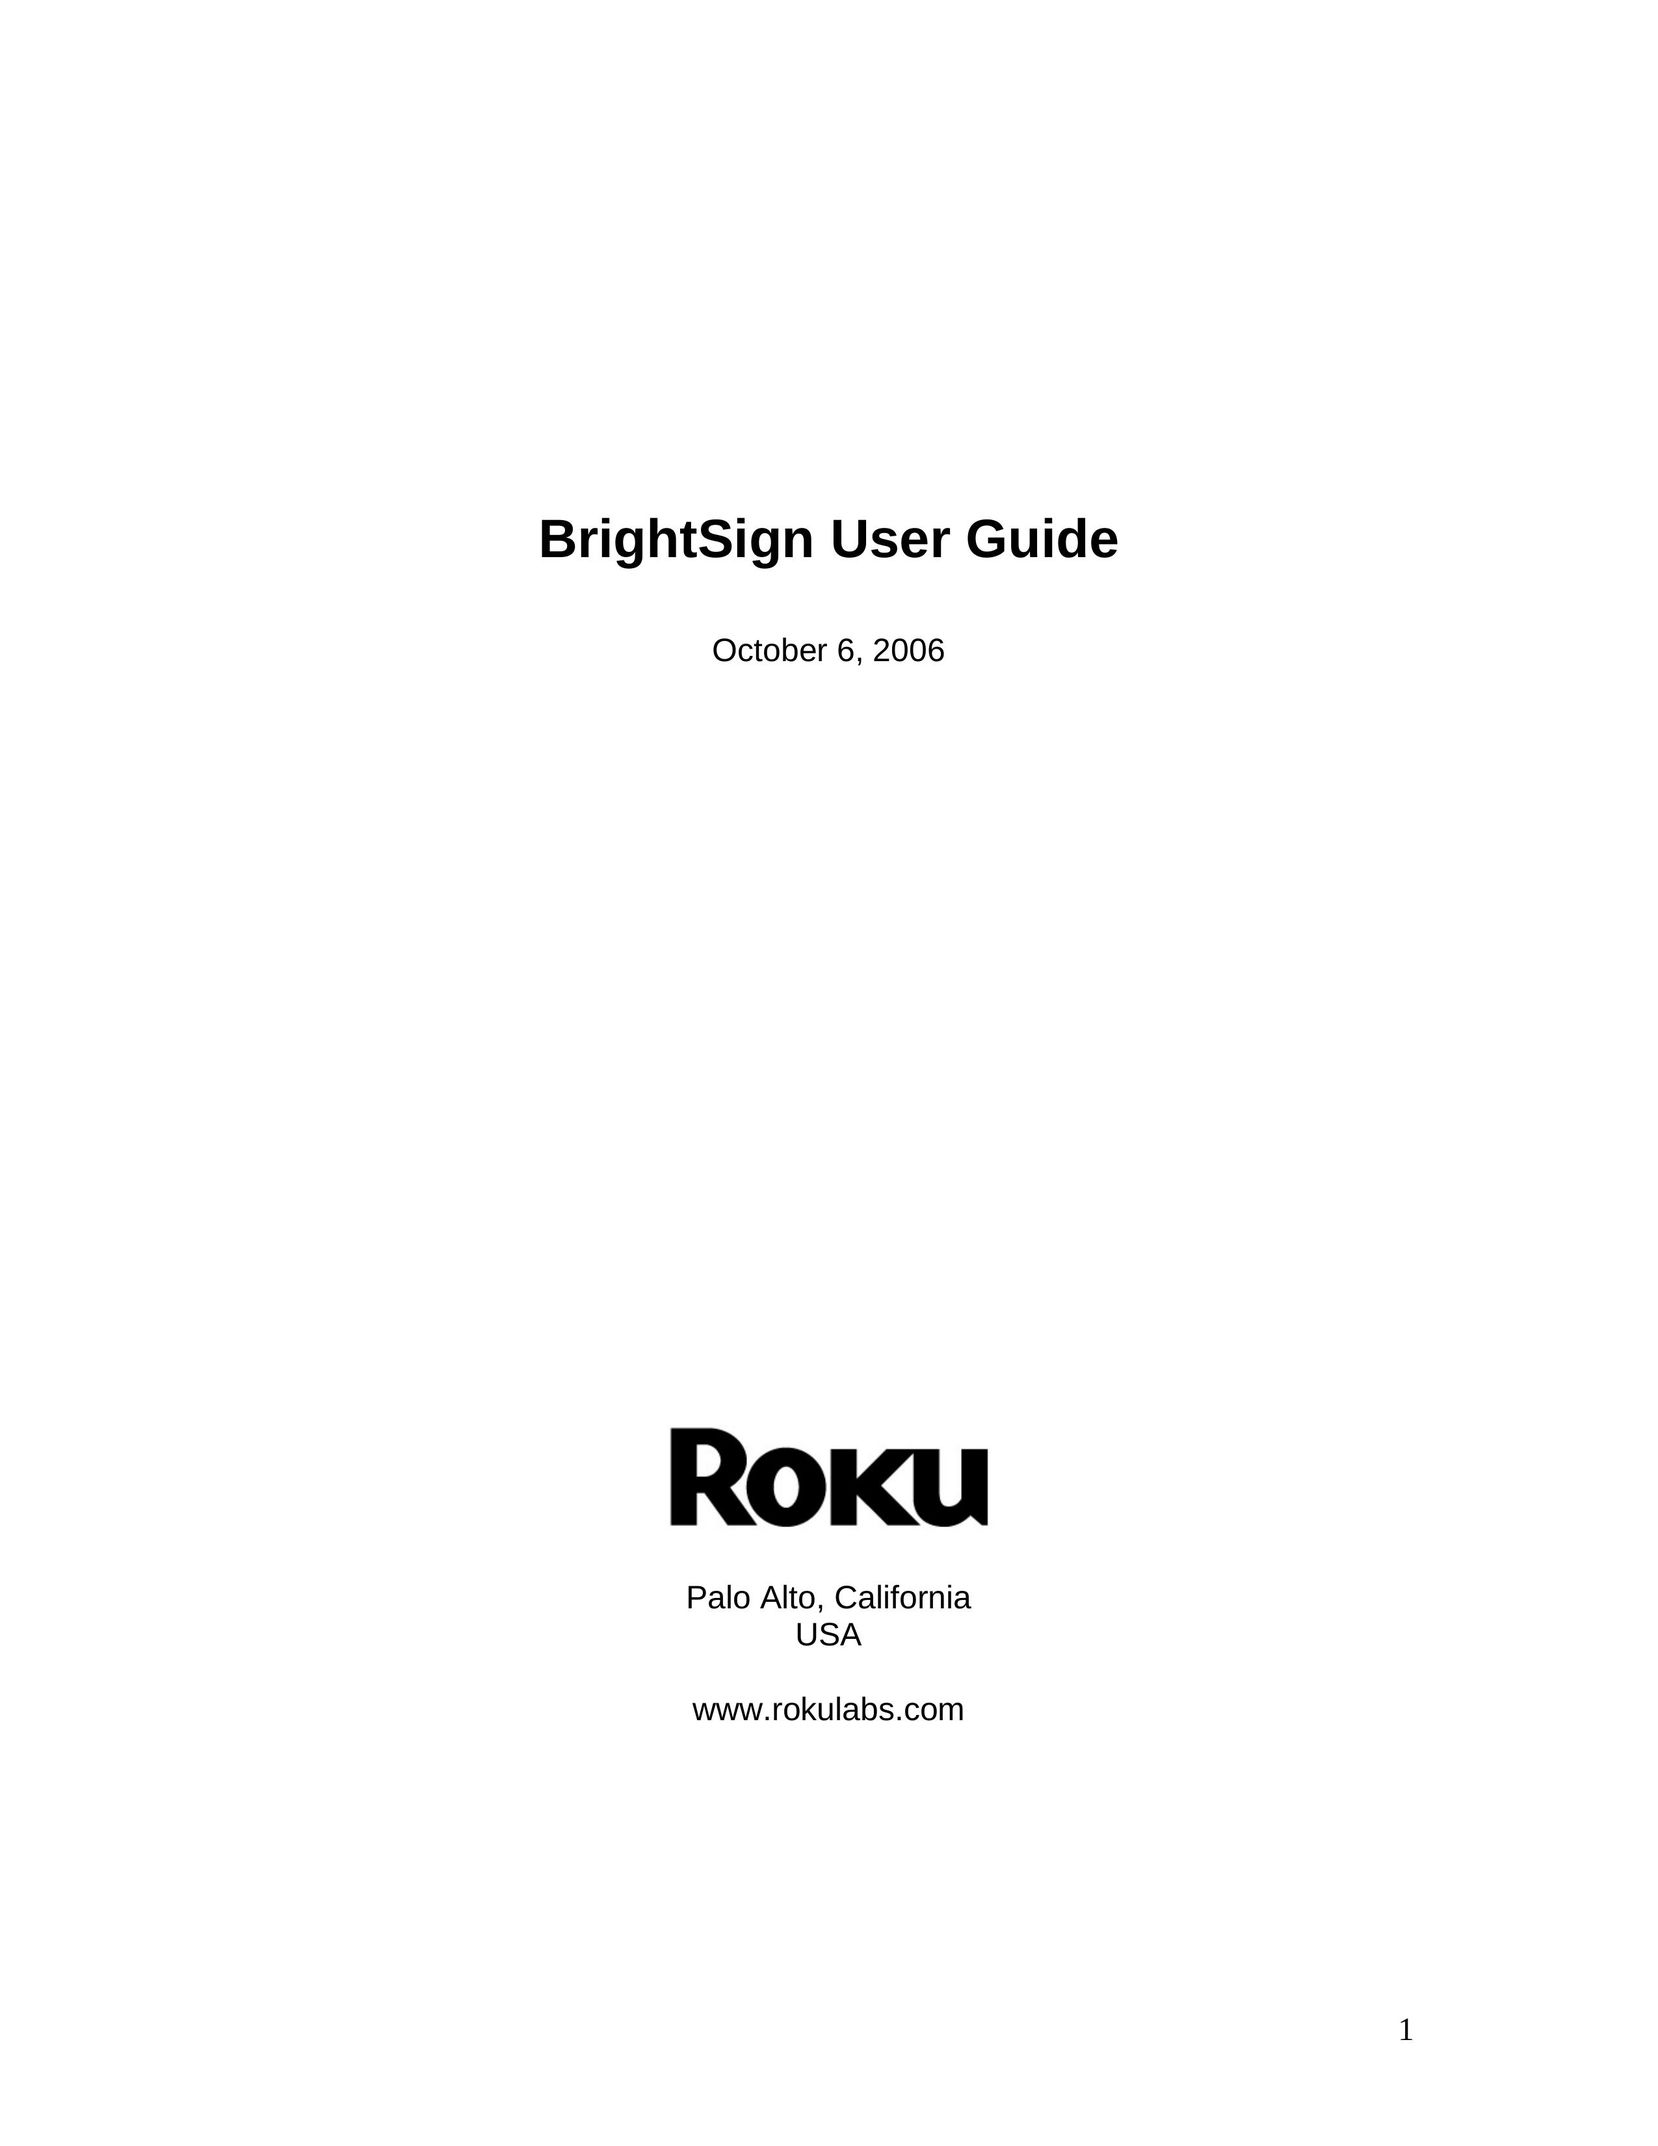 Roku BrightSign Computer Monitor User Manual